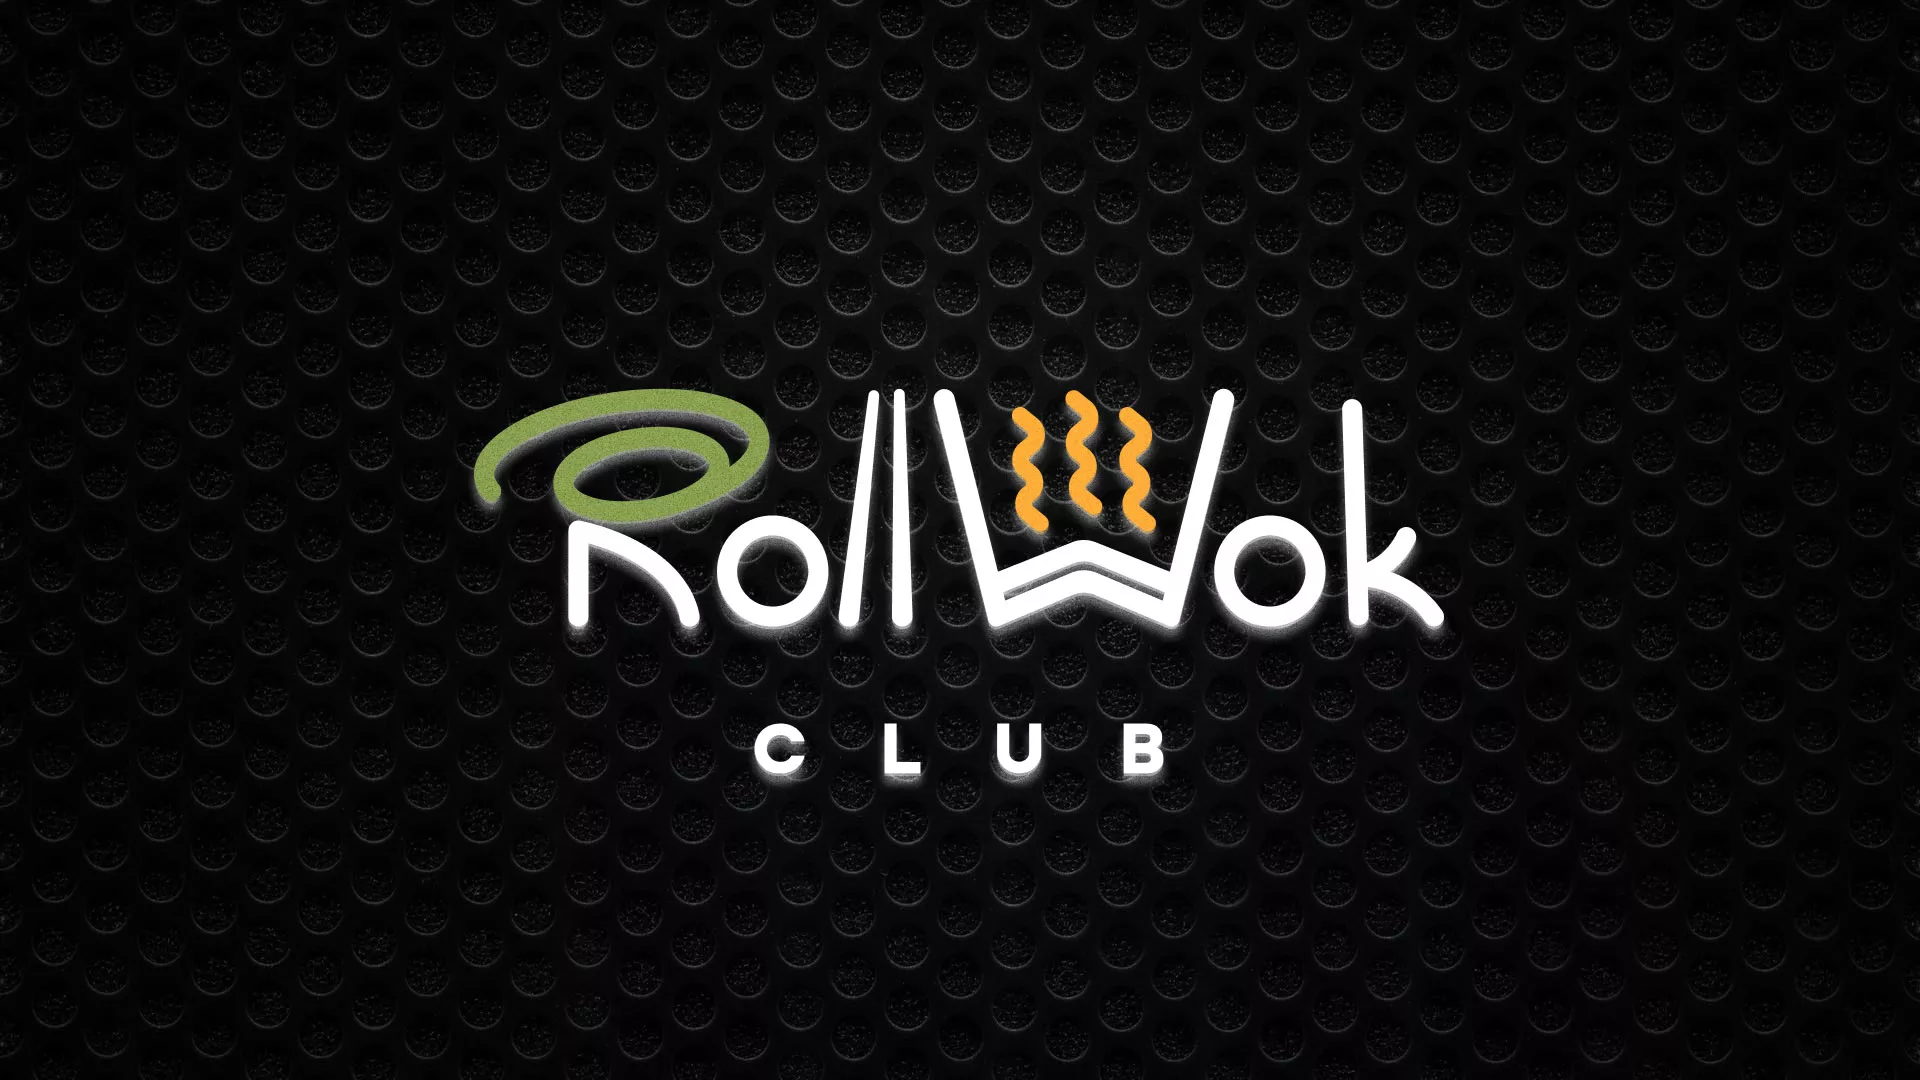 Брендирование торговых точек суши-бара «Roll Wok Club» в Усть-Куте